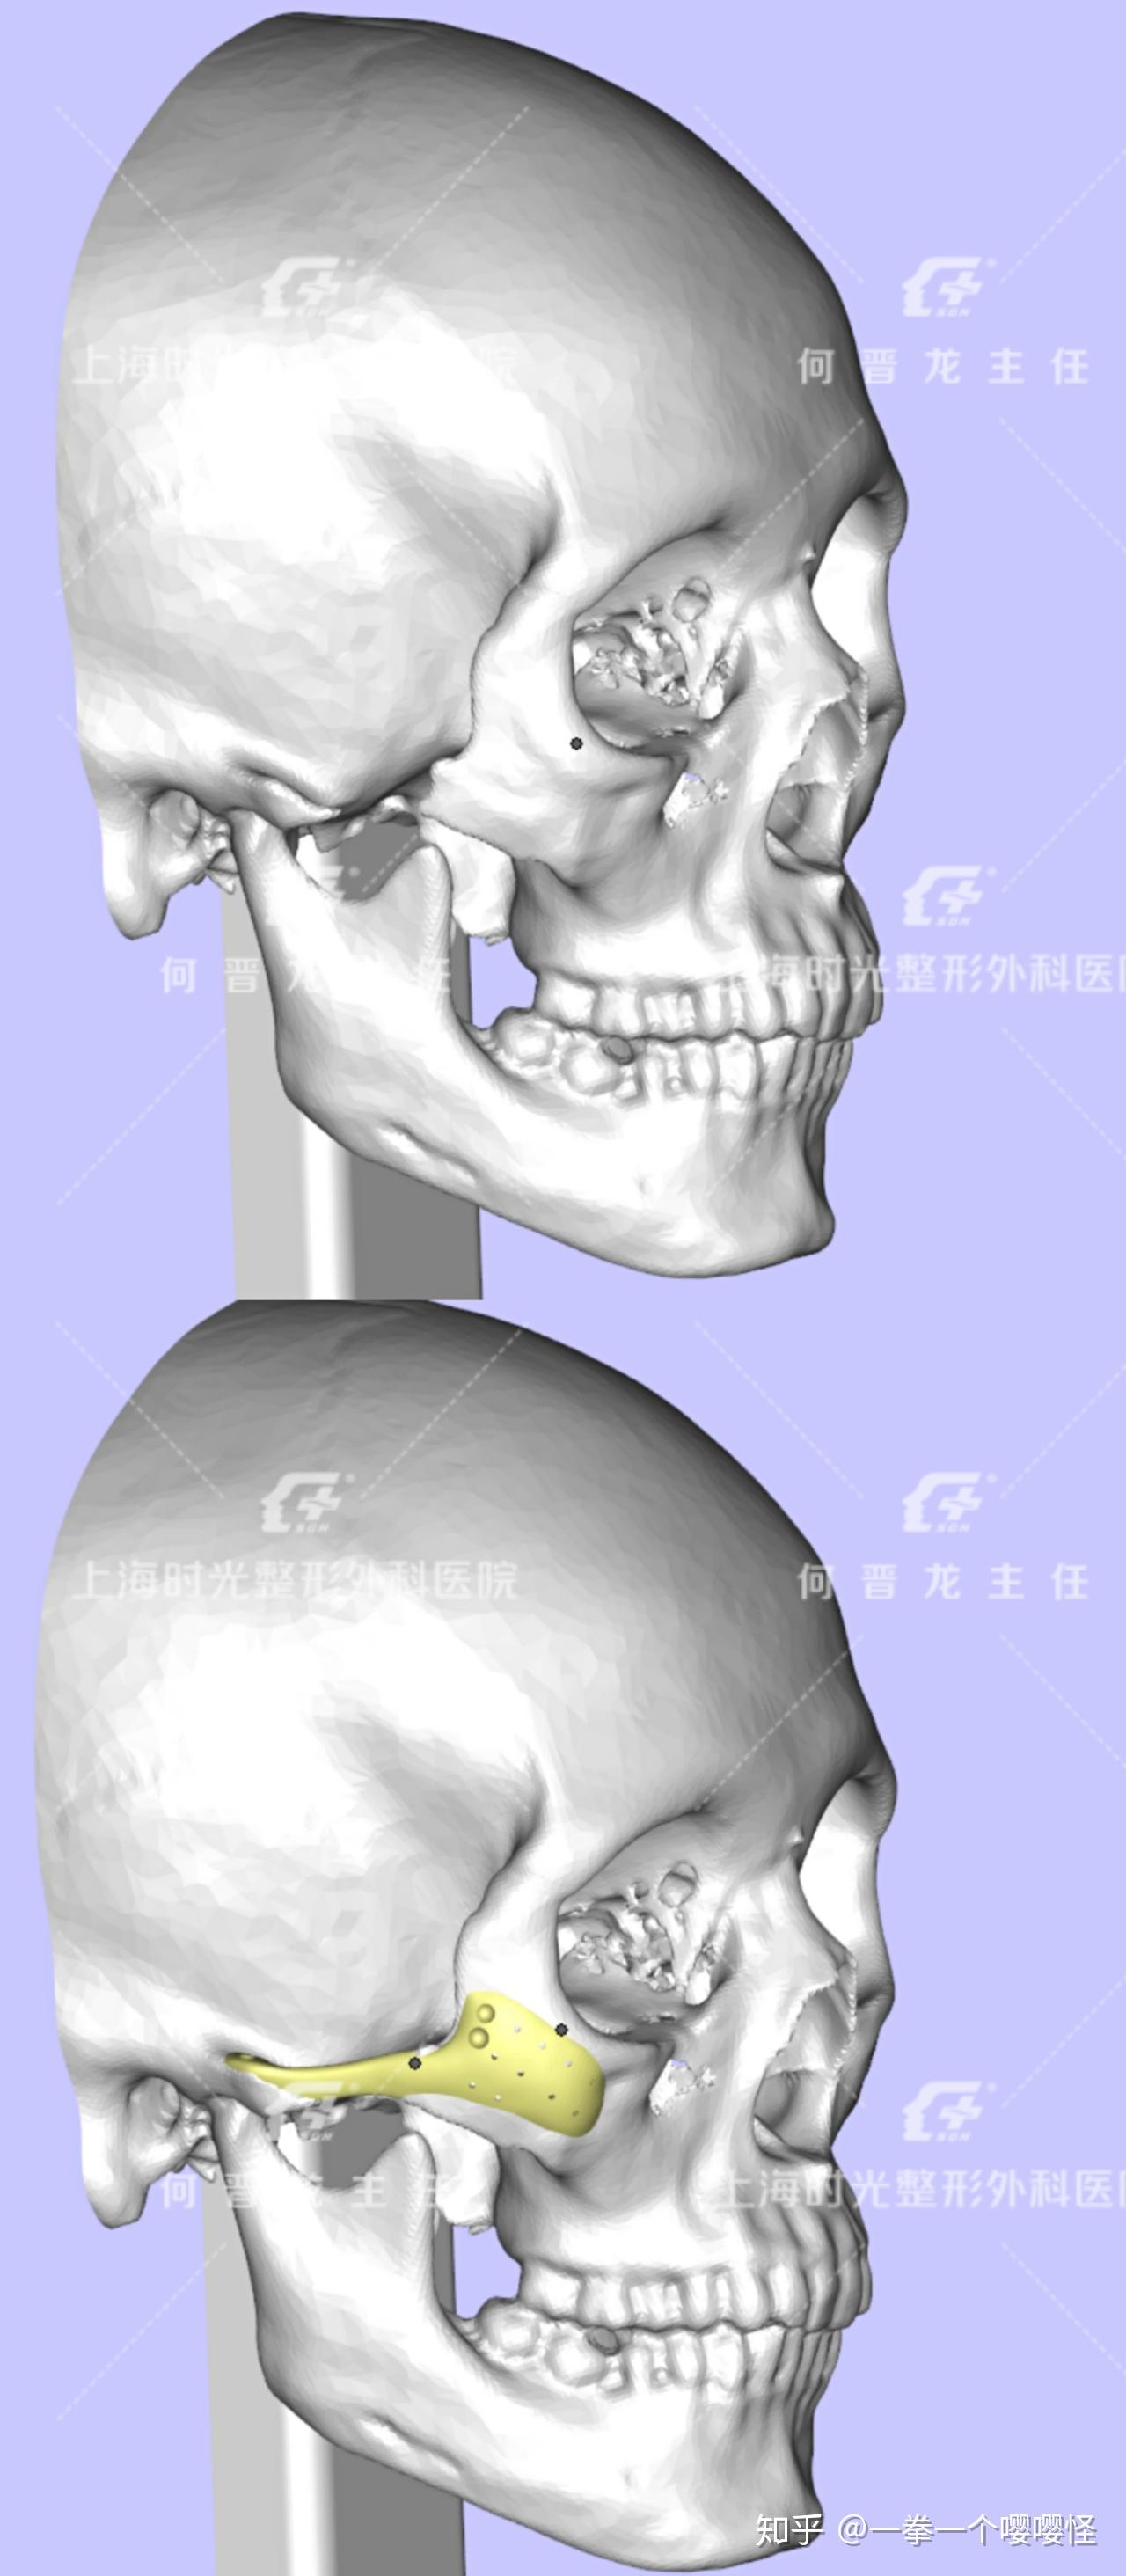 了解韩国颧骨整形手术方式——WJ原辰整形外科医院 - 知乎